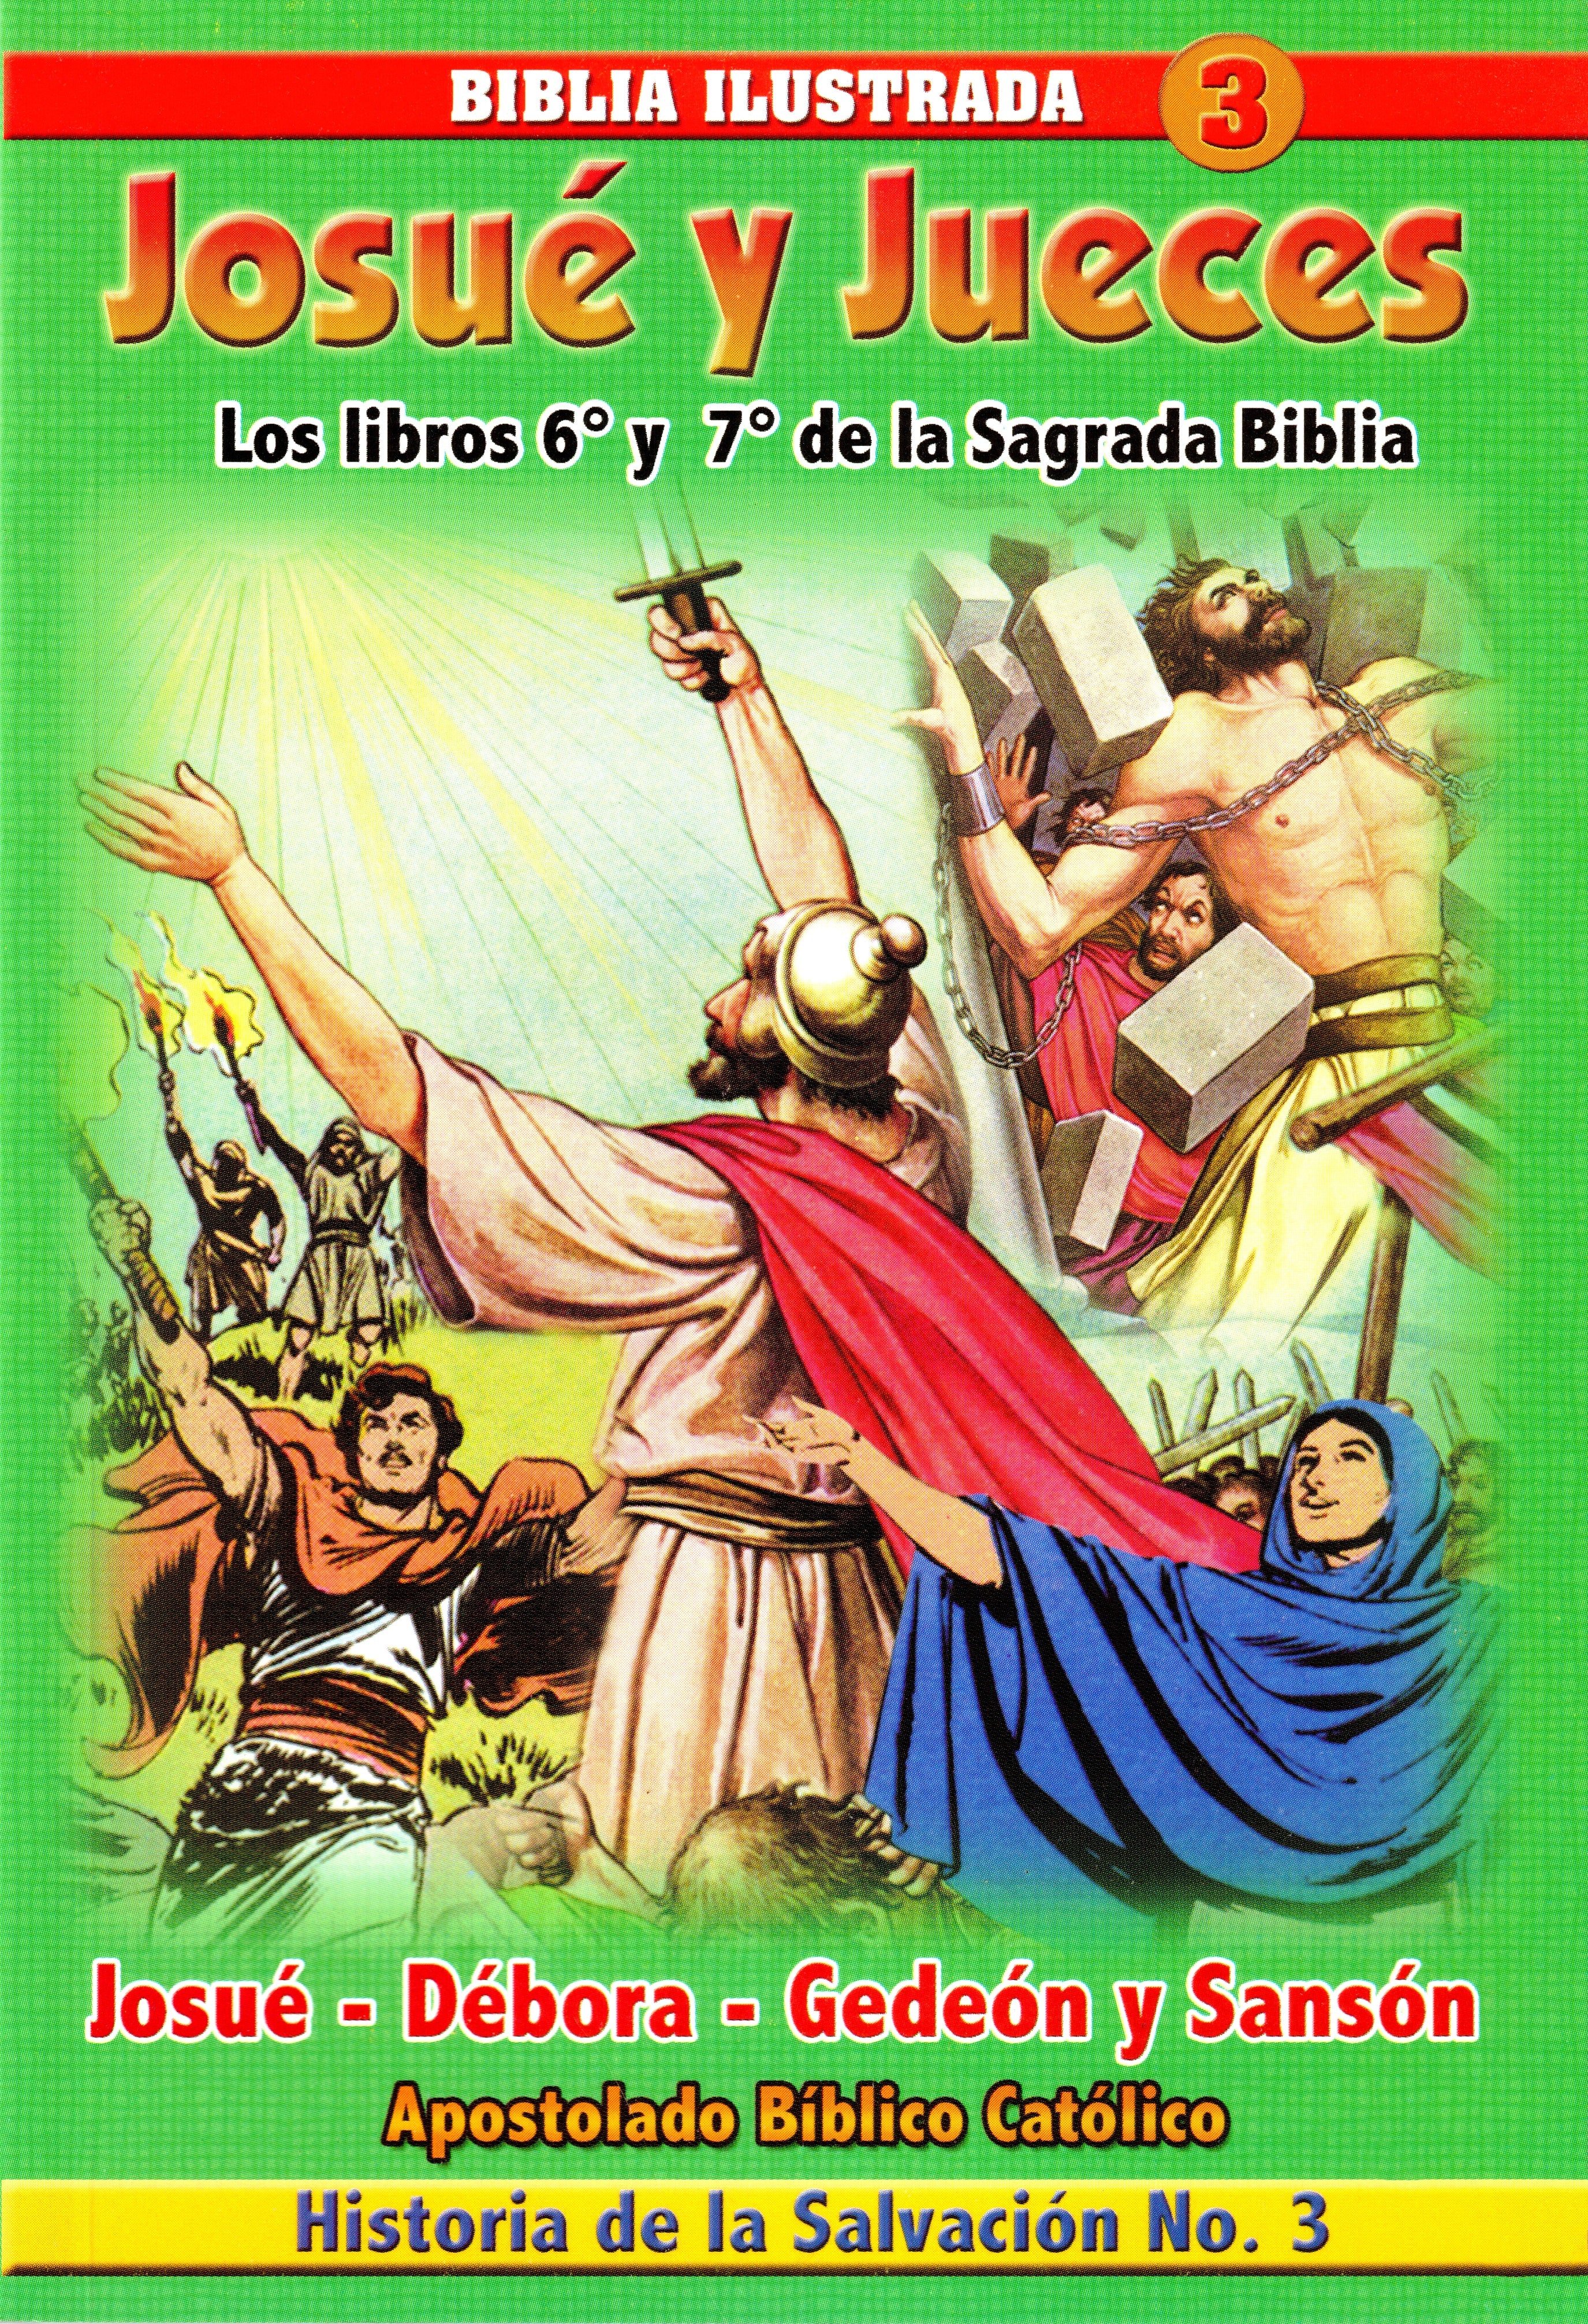 Josué y Jueces - Biblia Ilustrada Nº 3